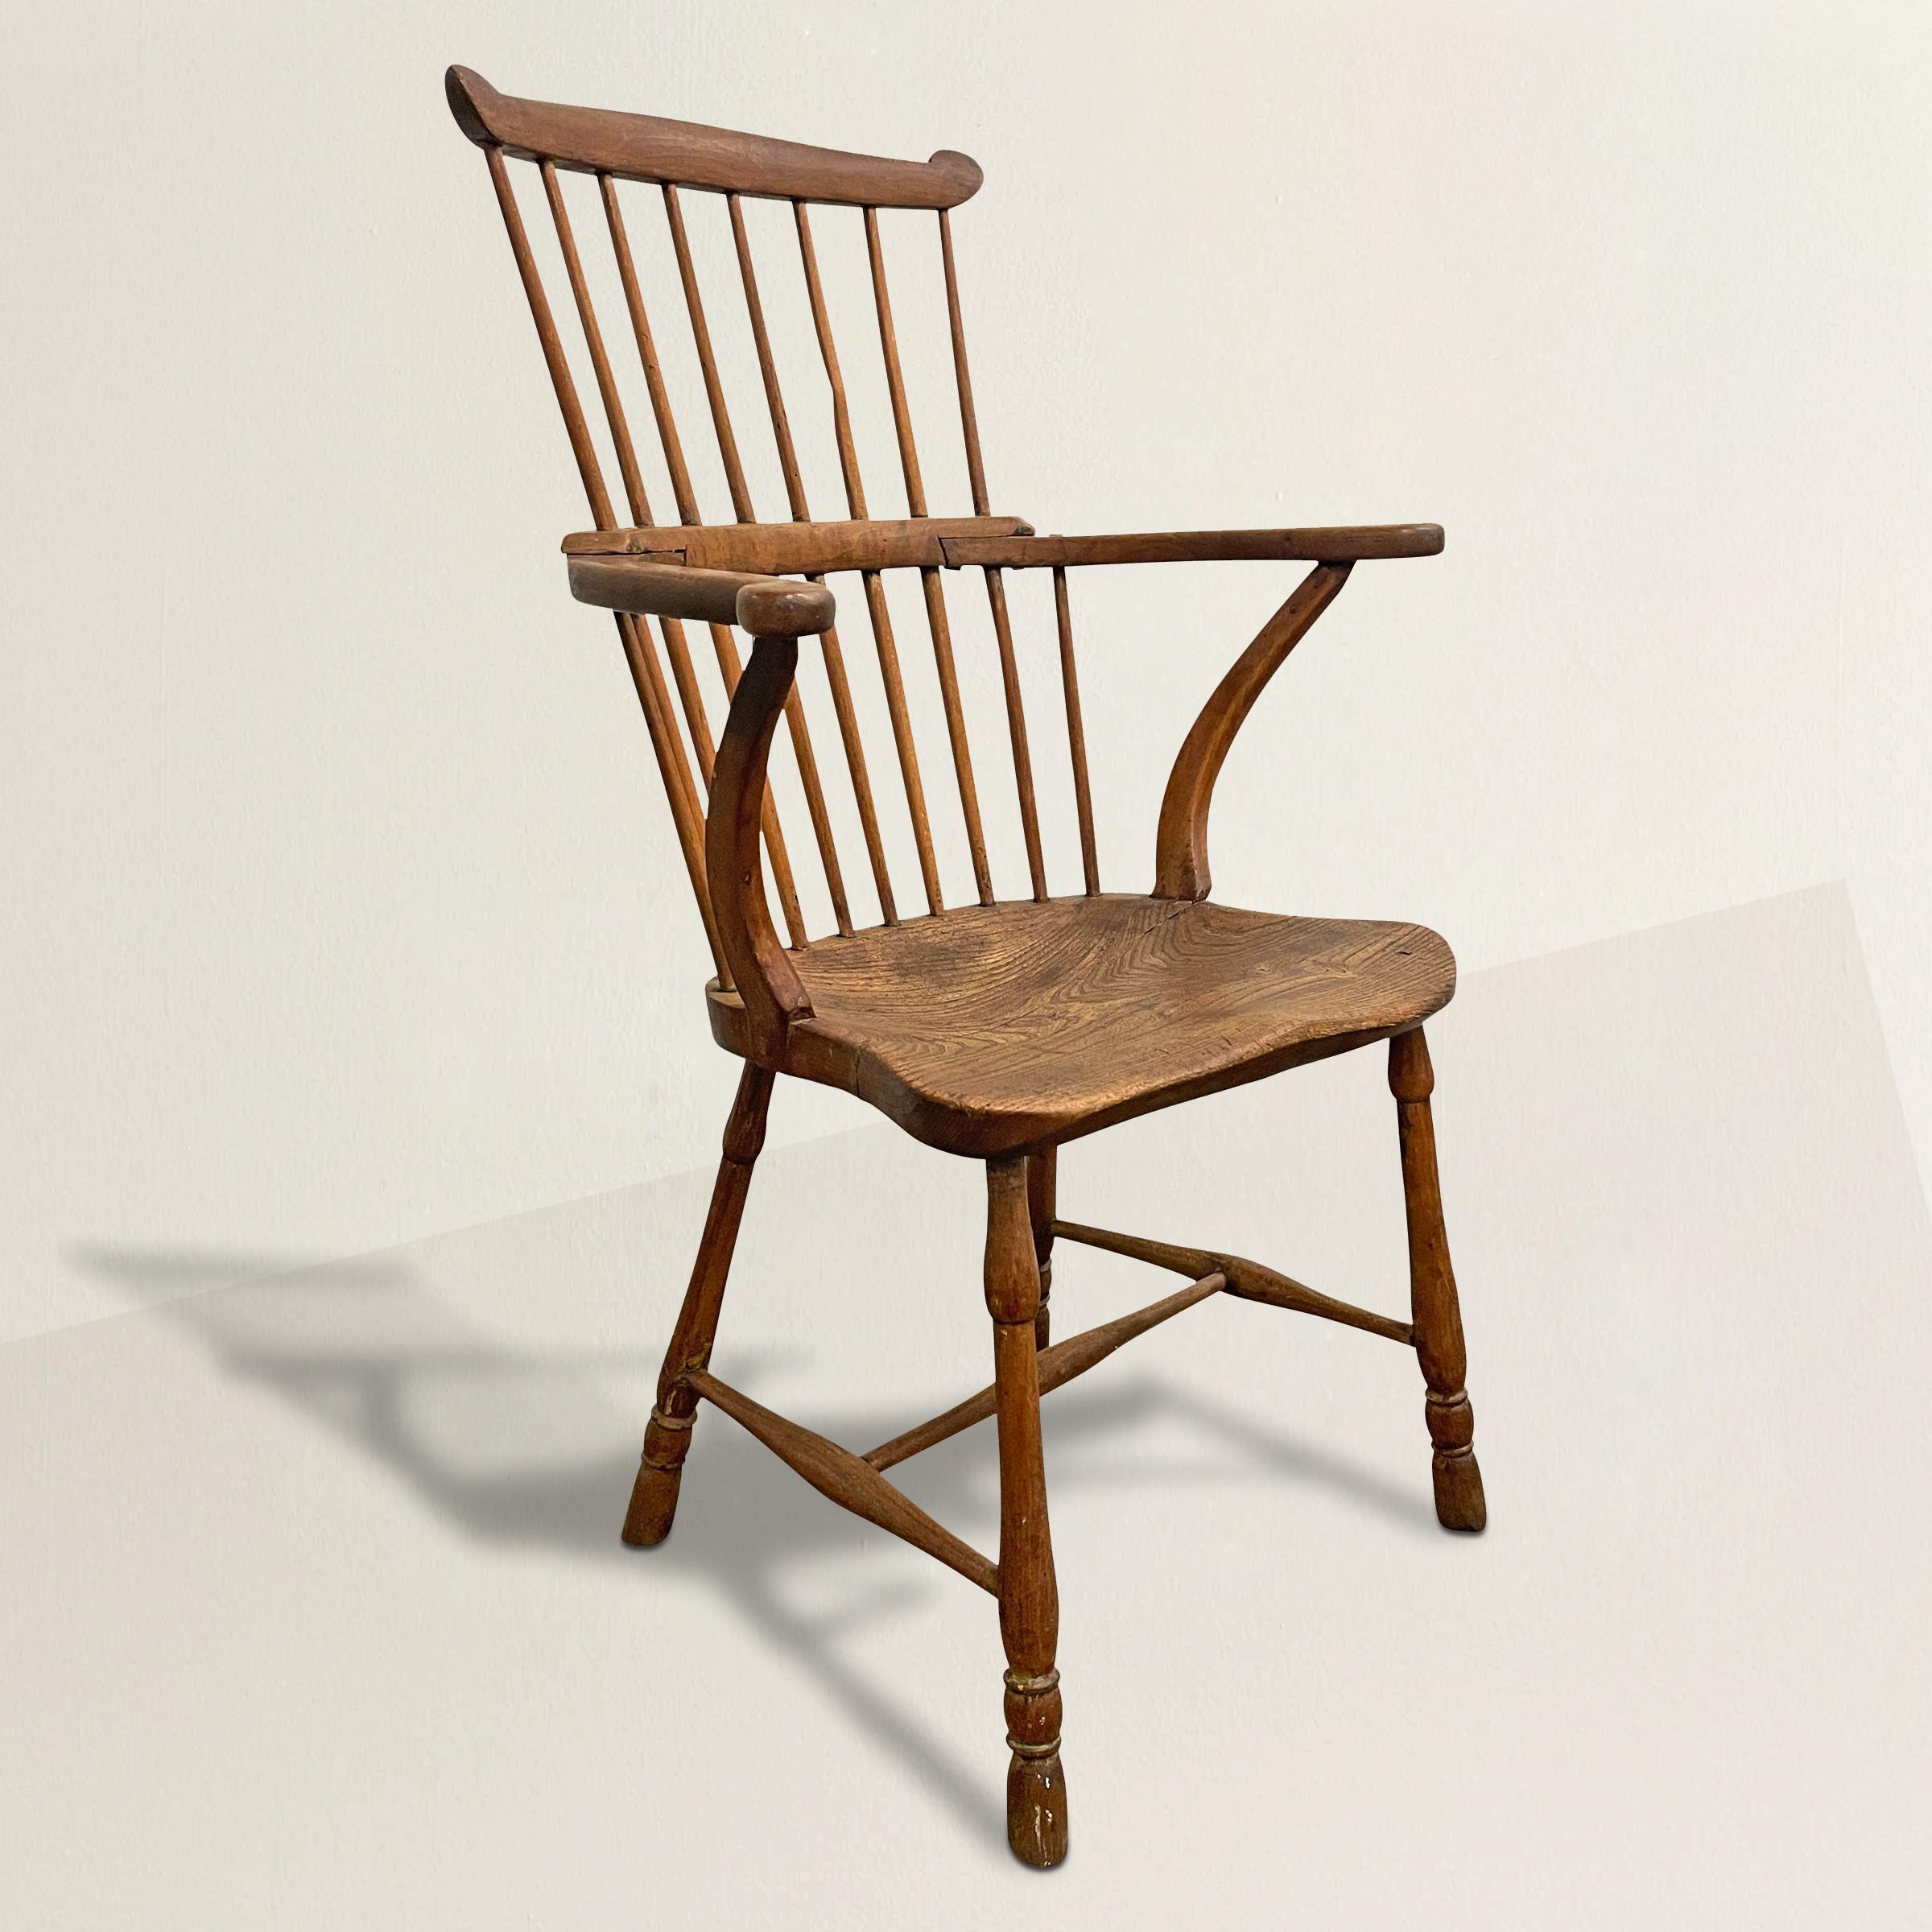 Ein schöner englischer Windsor-Stuhl aus Esche und Eiche mit Kammrücken aus dem 19. Jahrhundert mit nach außen gedrehten Armen, die von umgedrehten Bahren gestützt werden, gedrechselten Beinen, die durch eine Bugholzstreckung verbunden sind, und